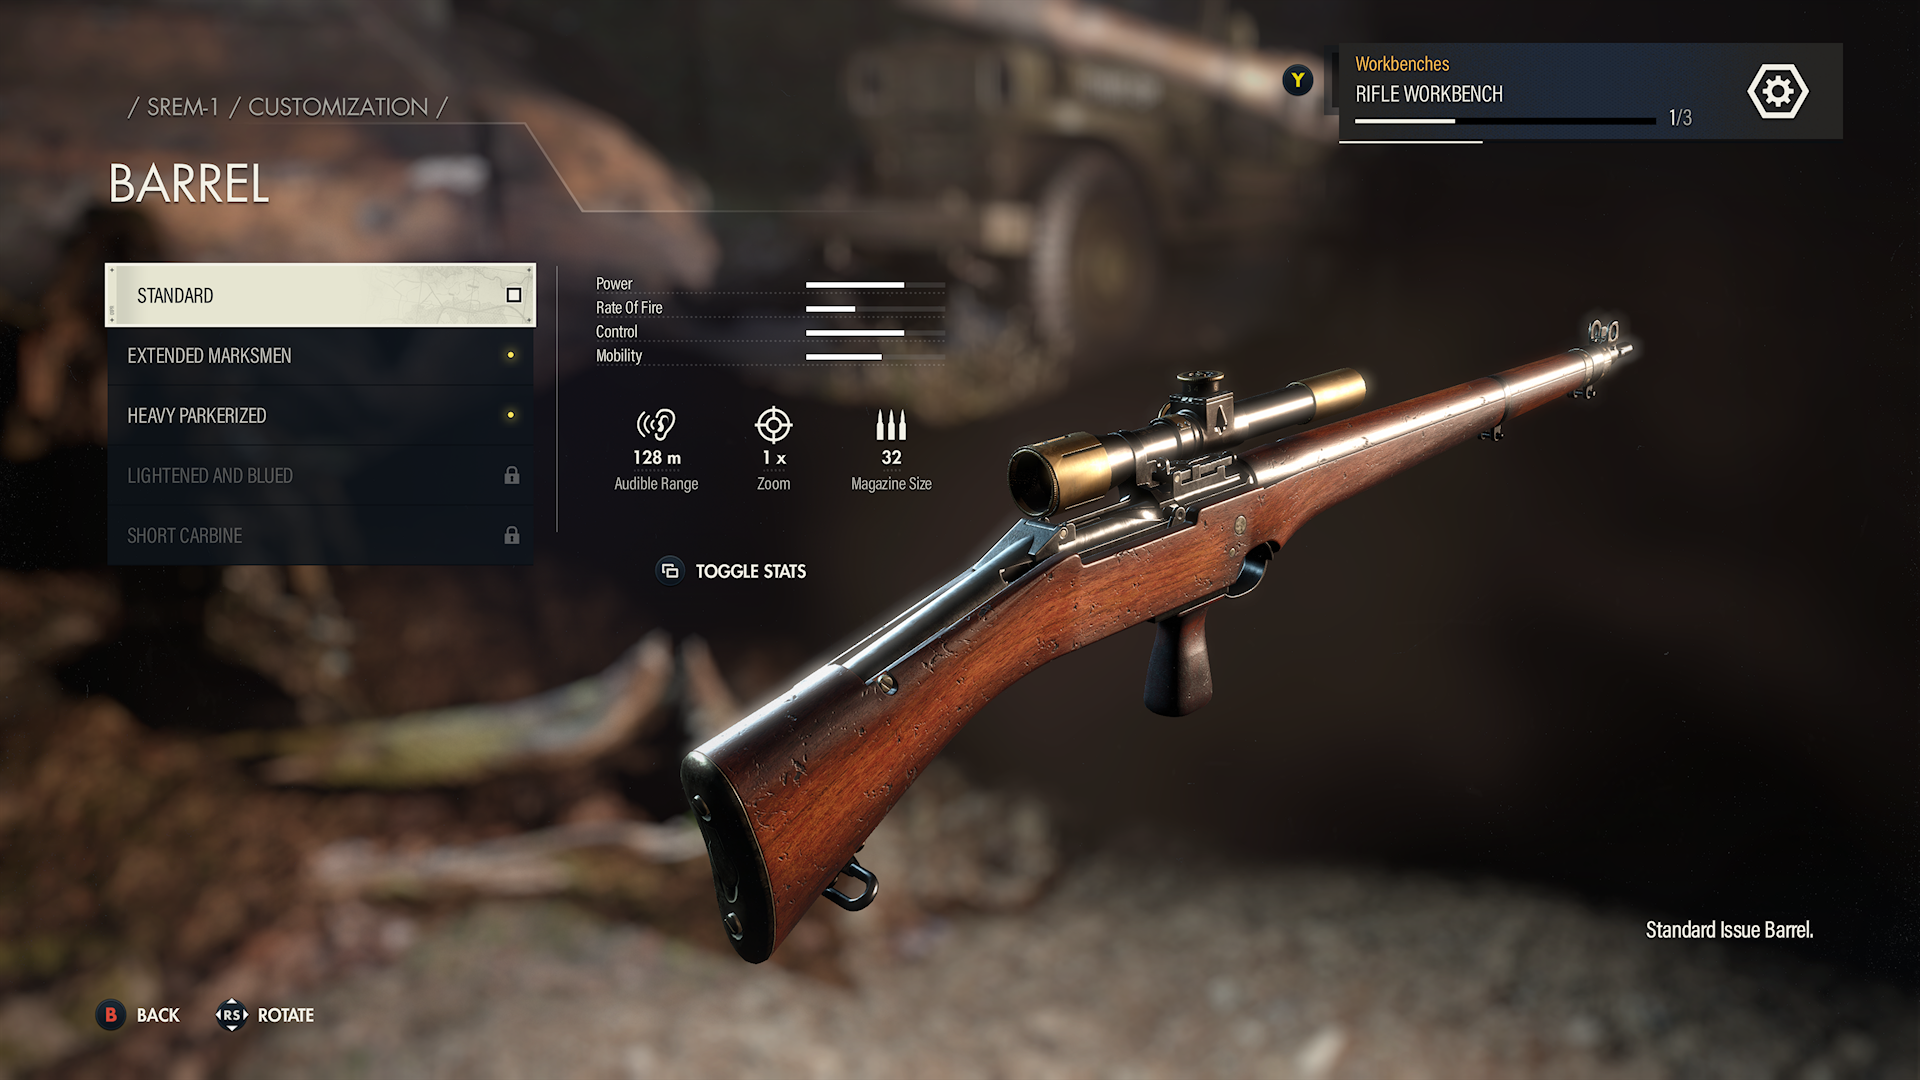 Captura de pantalla de personalización de armas de Sniper Elite 5, que muestra un rifle de francotirador.